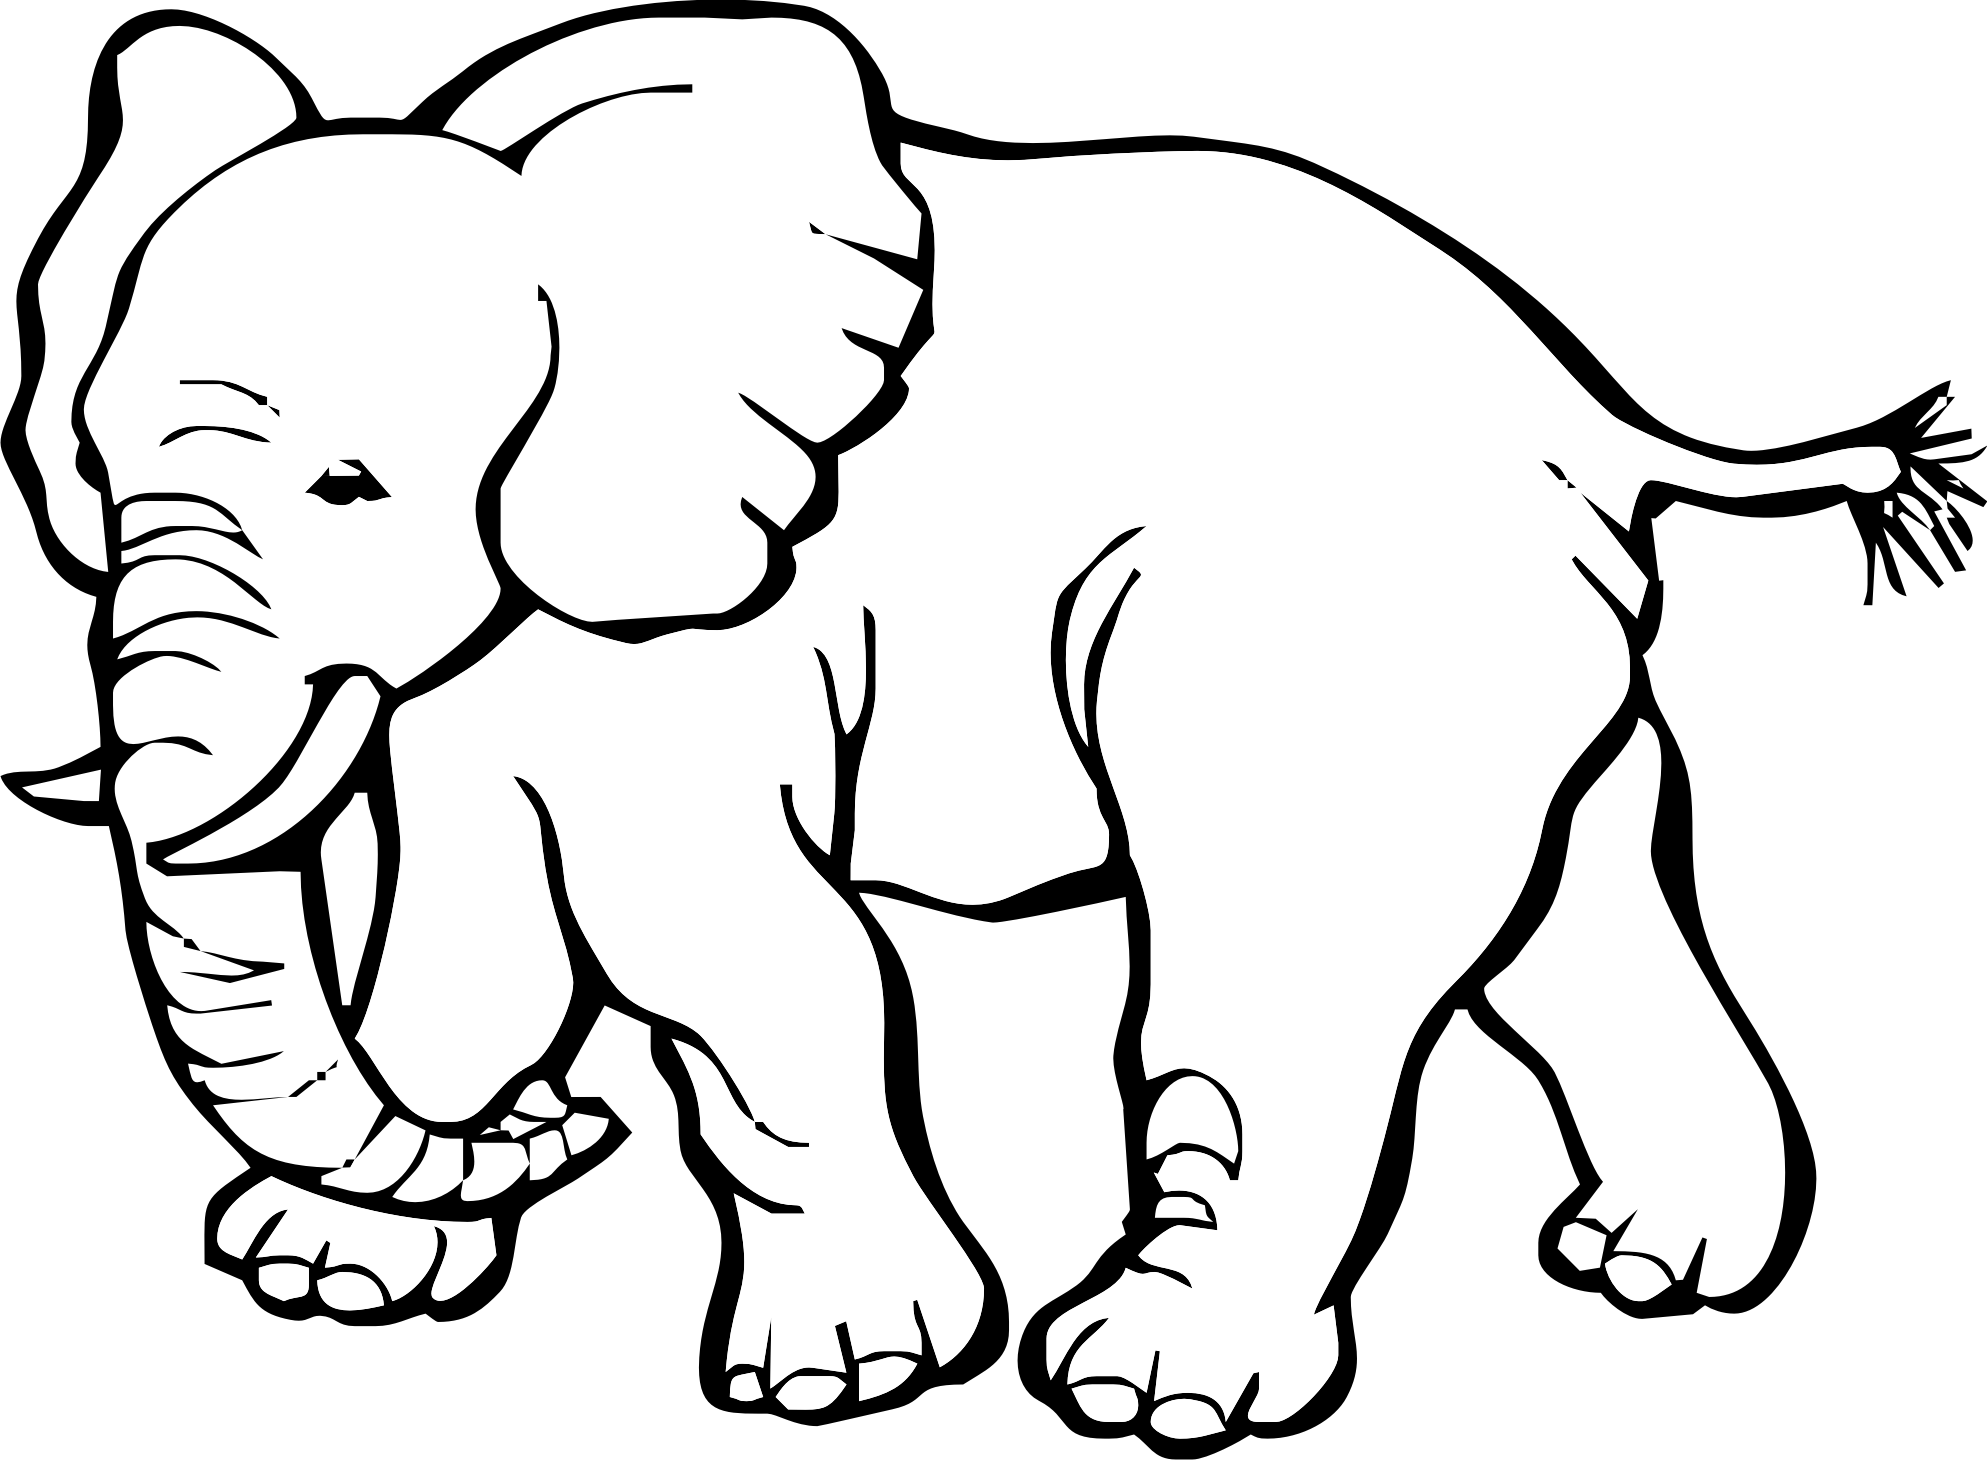 Grande elefante realistico disegno da colorare per bambini